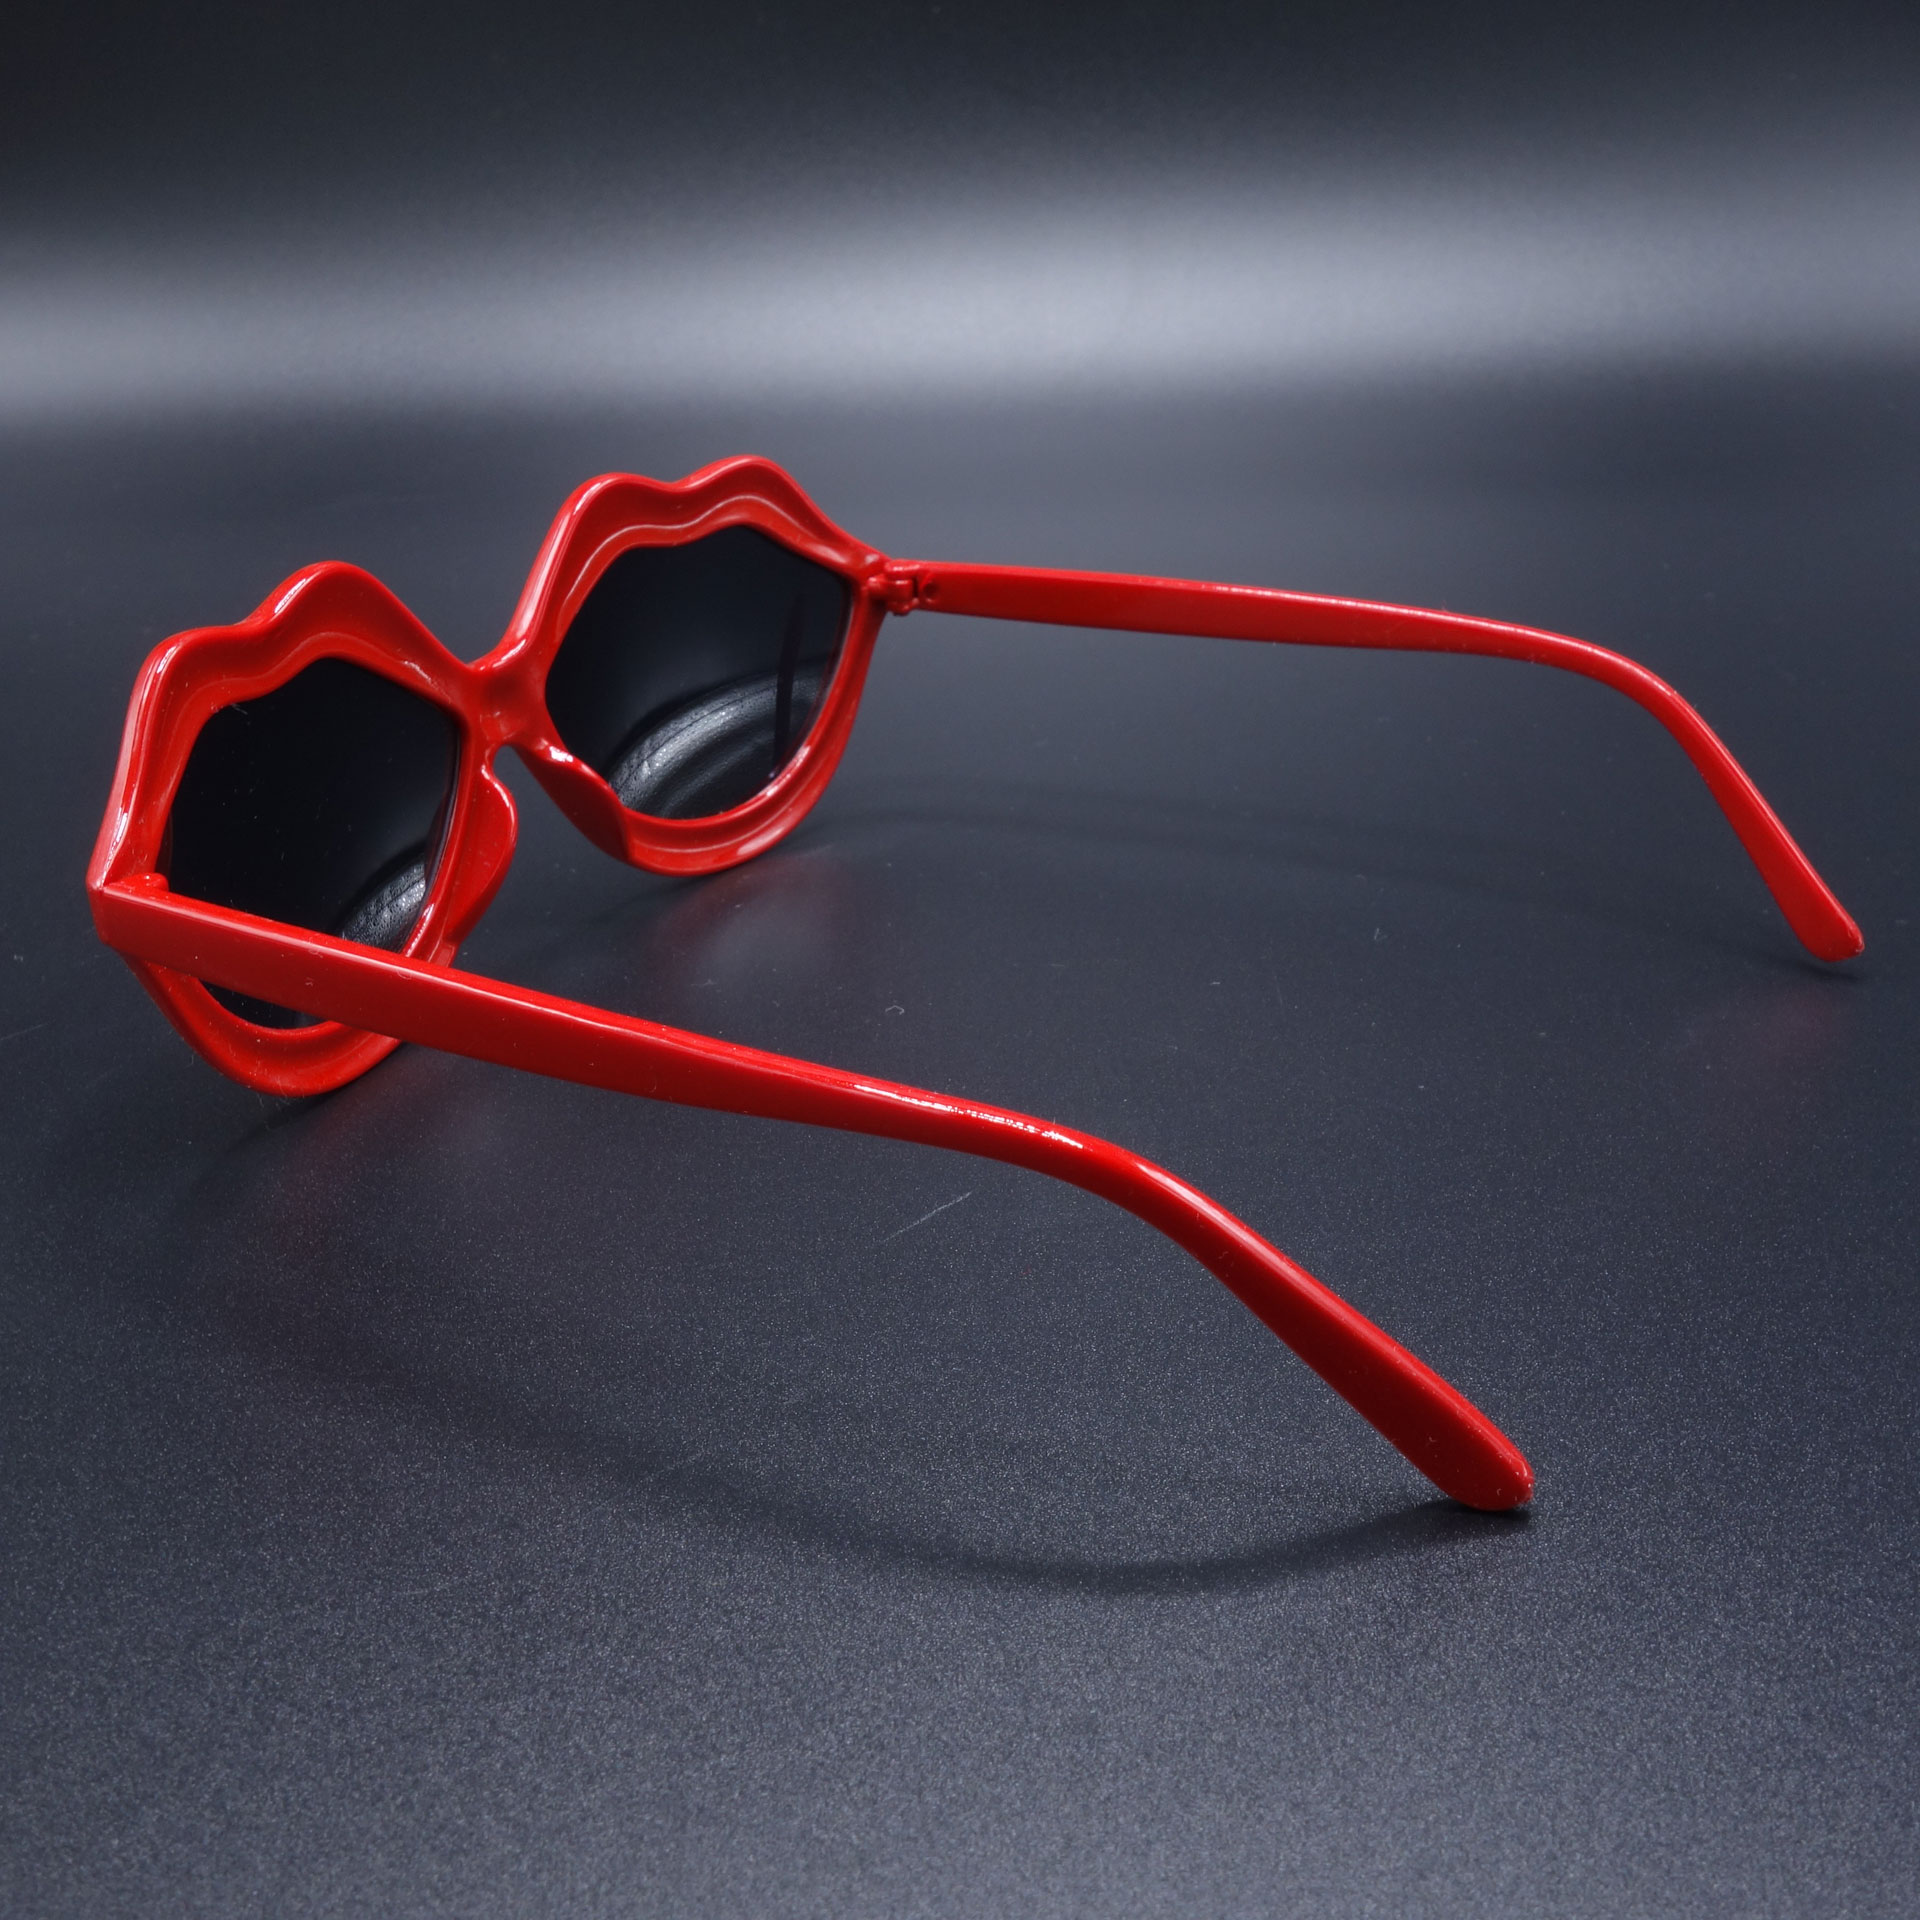 Partybrille Spassbrille Scherzarikel Brille Rote Lippen